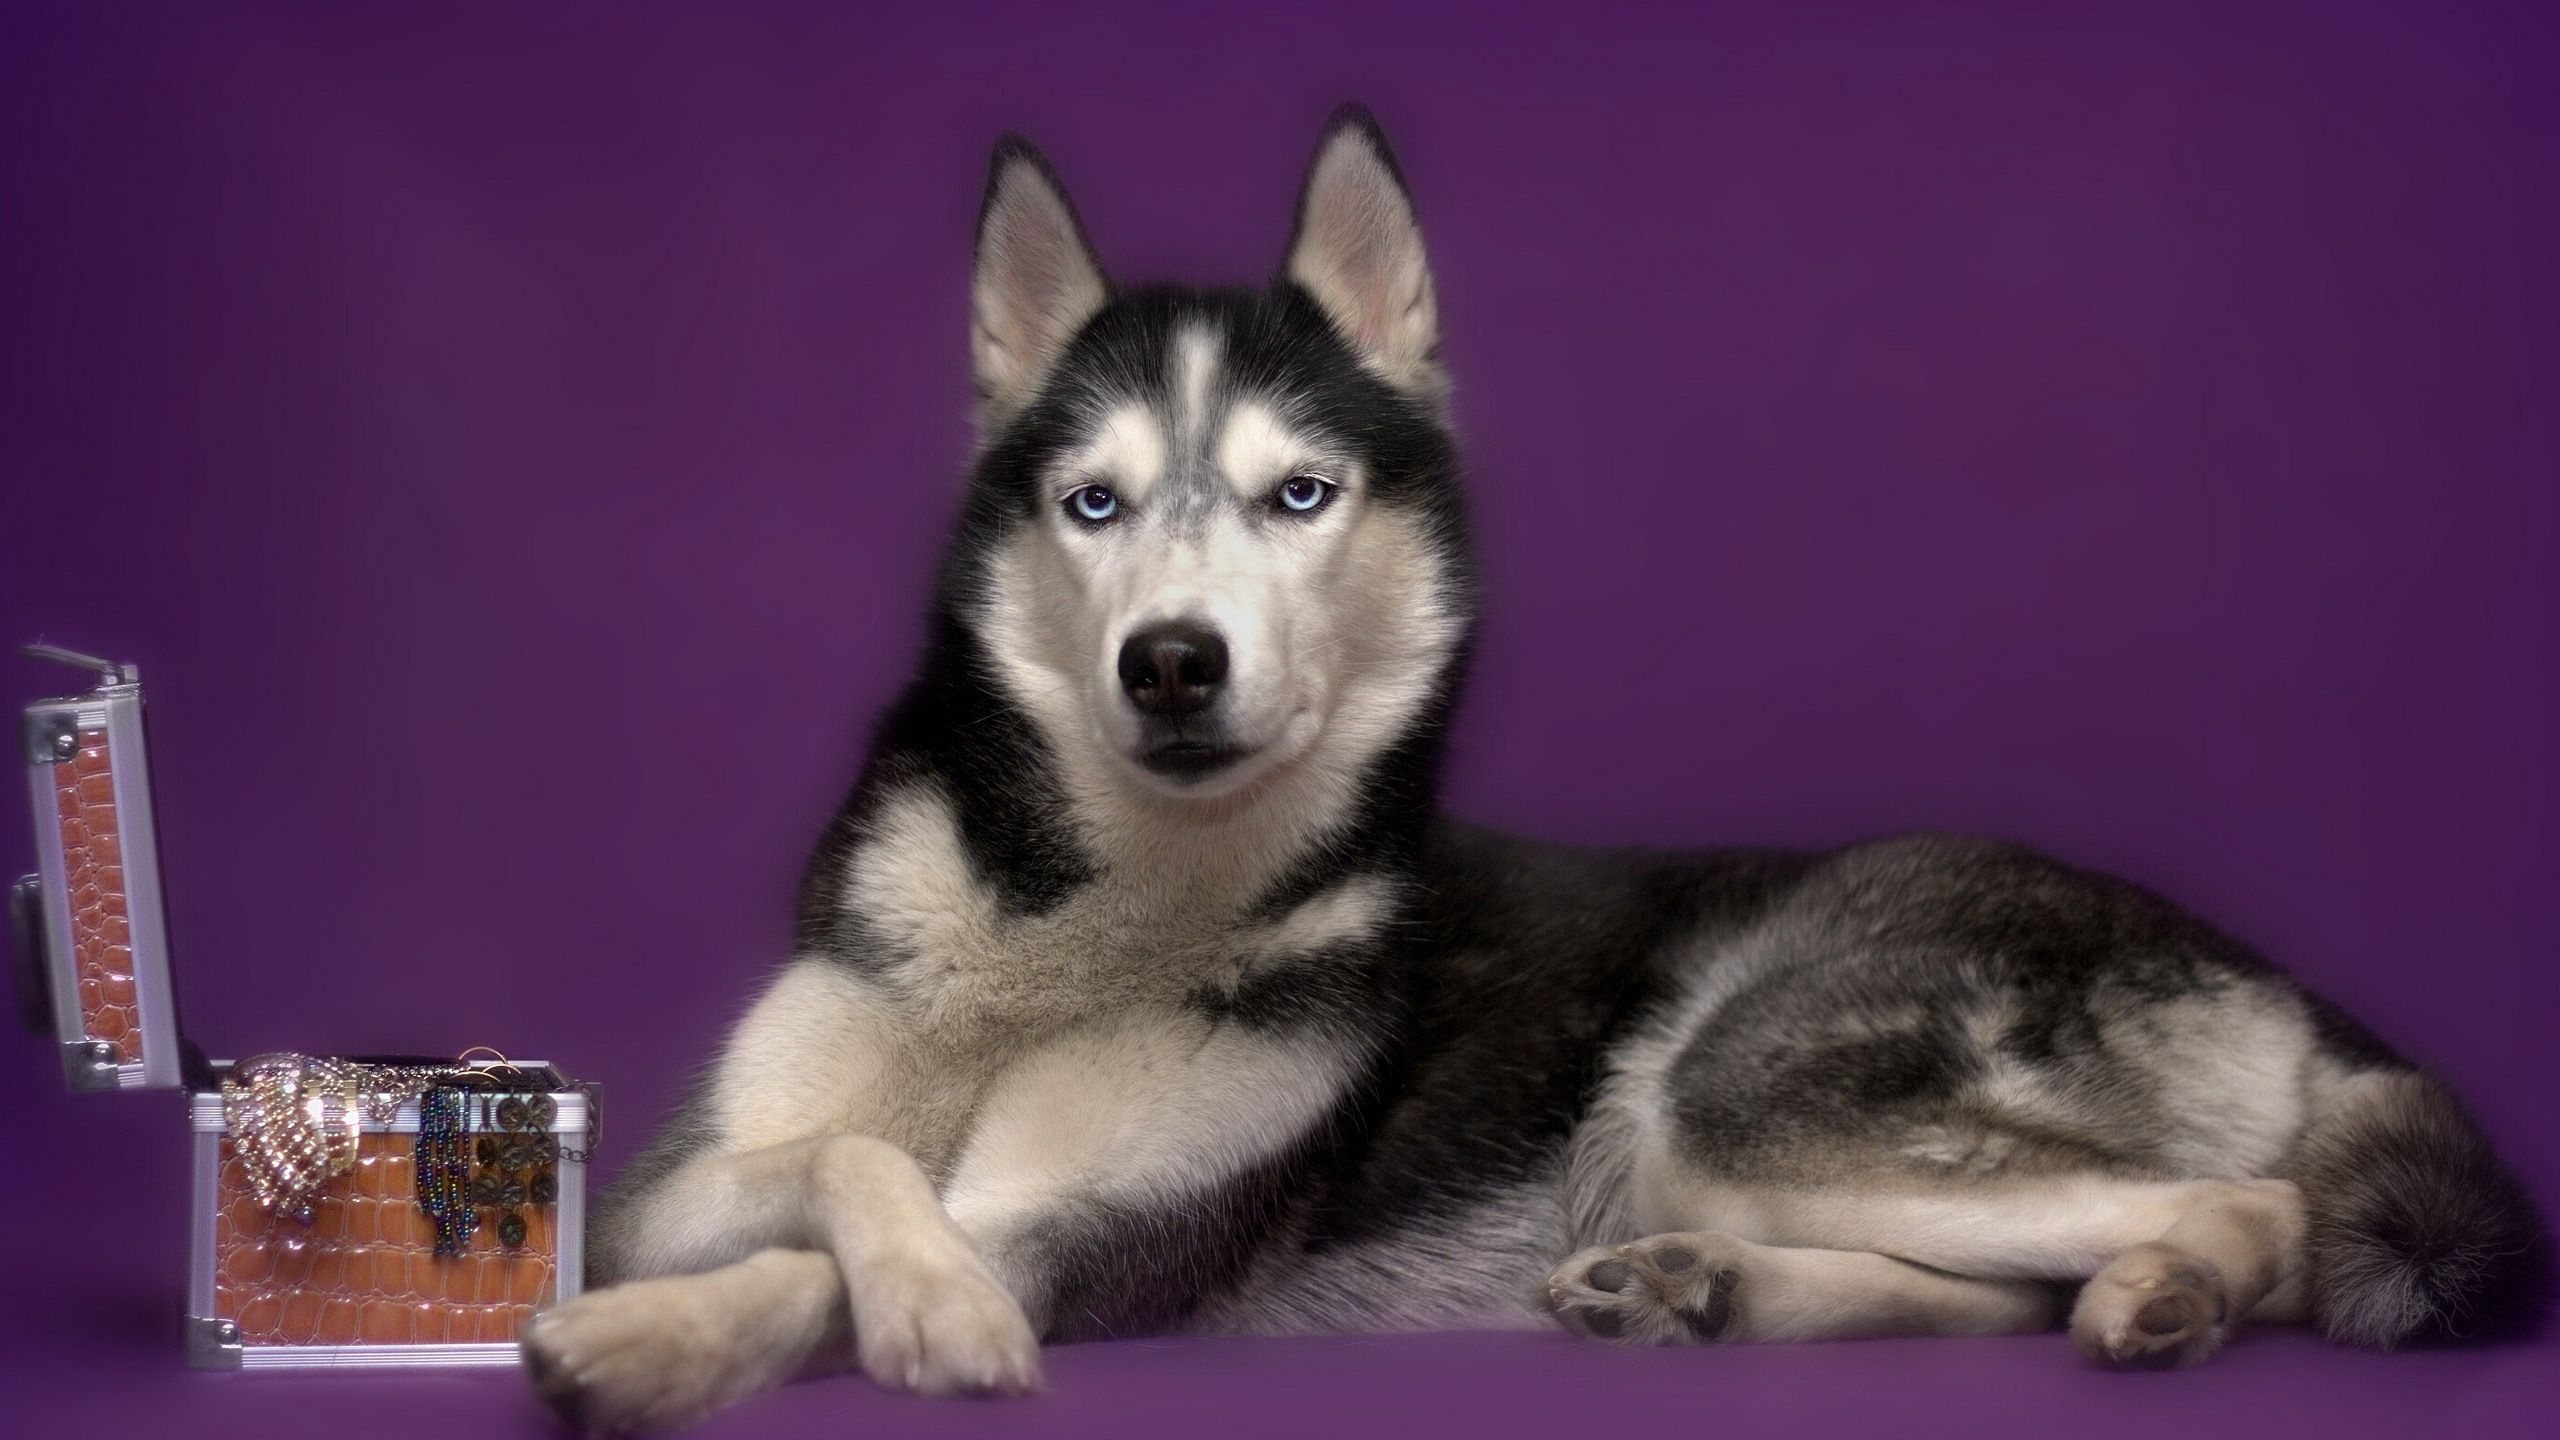 阿拉斯加雪橇犬, 小狗, 雪橇狗, 萨哈林赫斯基, 微型哈士奇 壁纸 2560x1440 允许